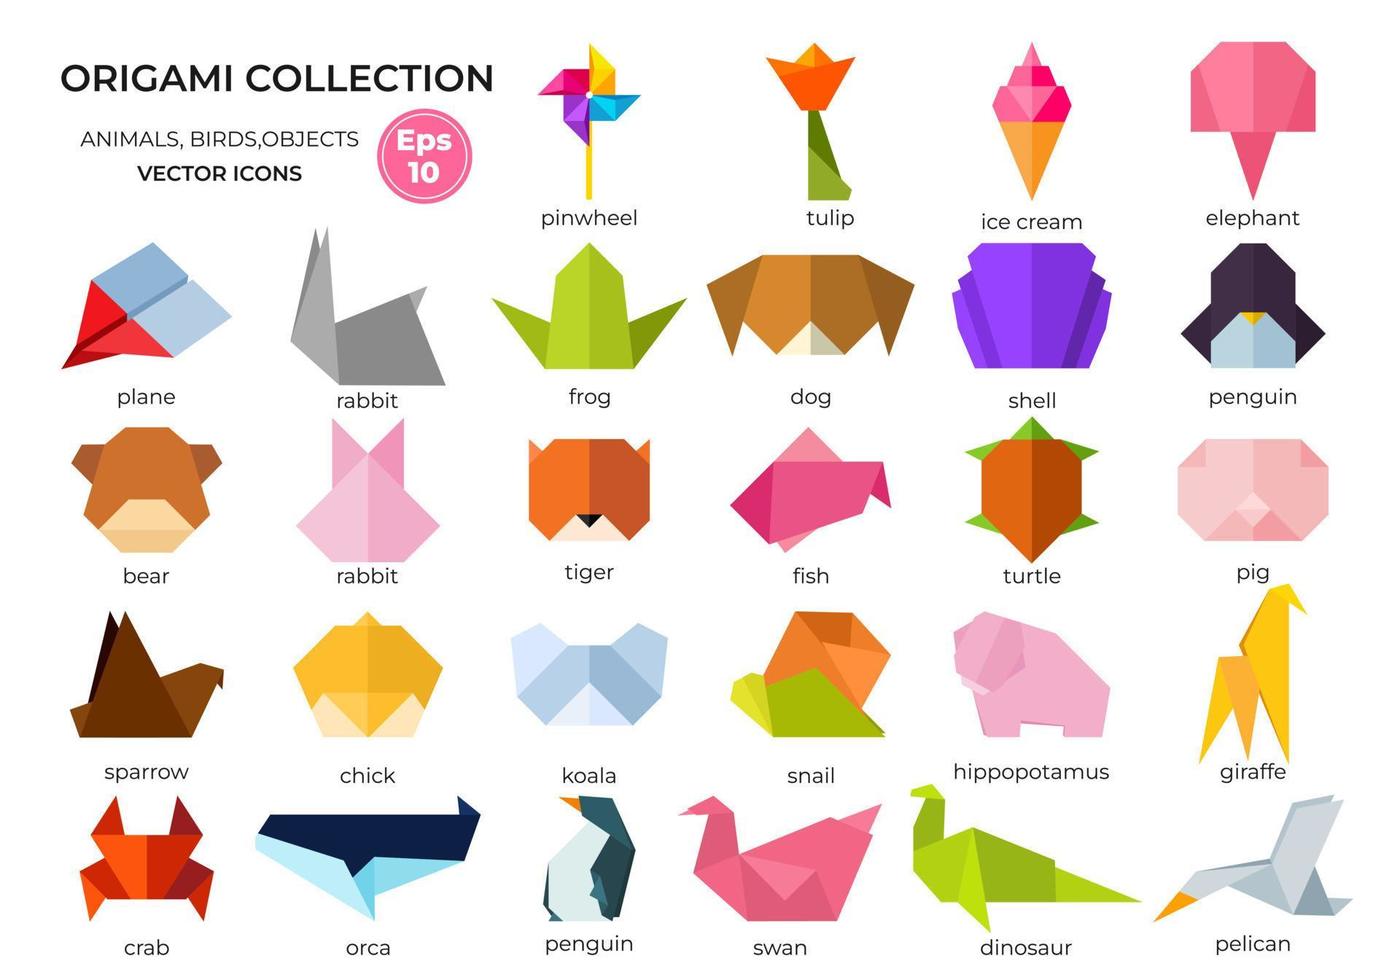 collezione di vario origami animali, uccelli, pesce e oggetti con vivace pendenza colori. vettore illustrazione. isolato origami icone.